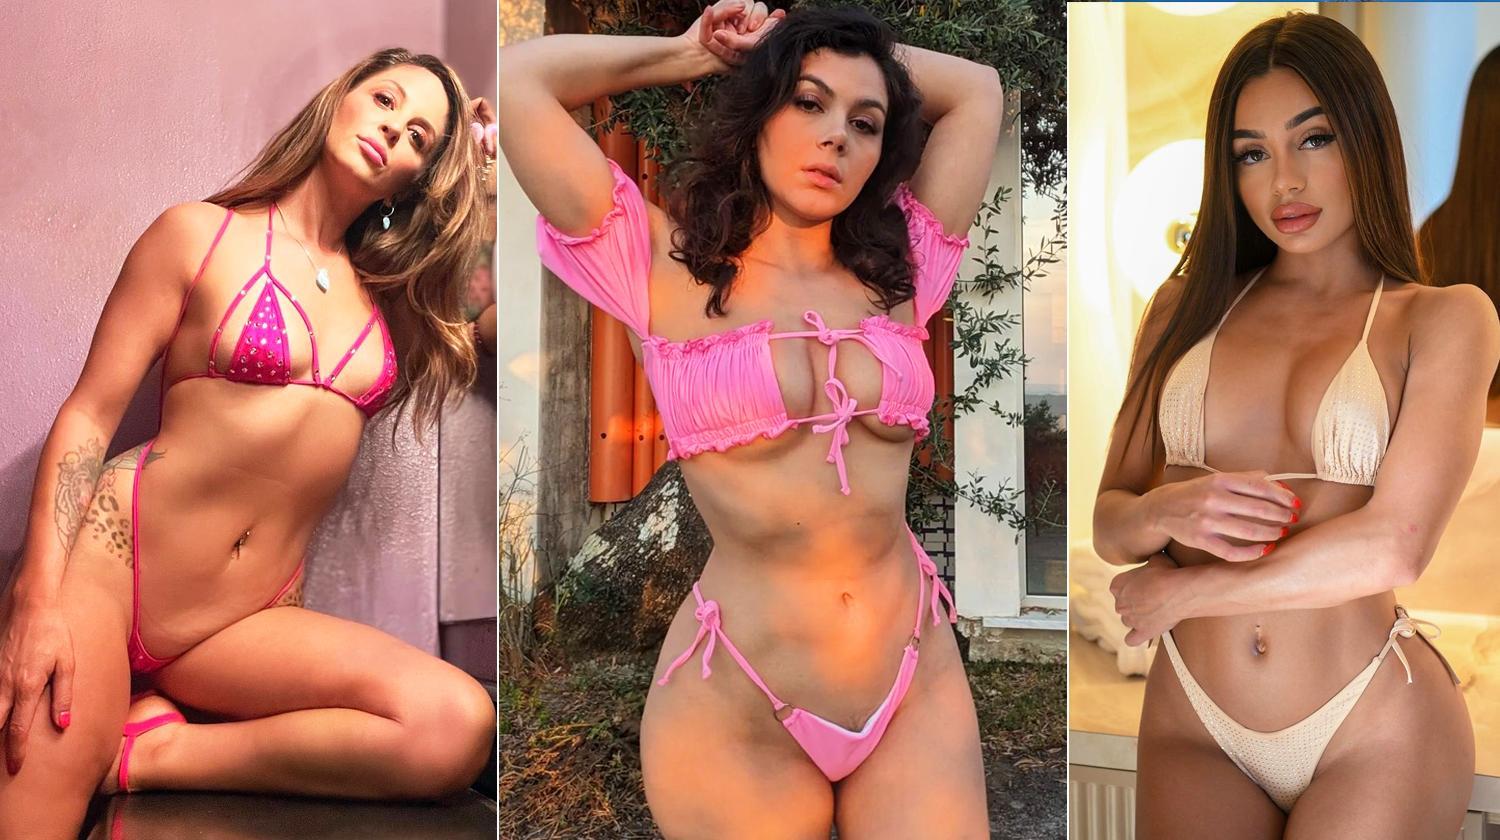 Порно актрисы и порно актёры с фото — Каталог лучших порно звёзд смотреть онлайн